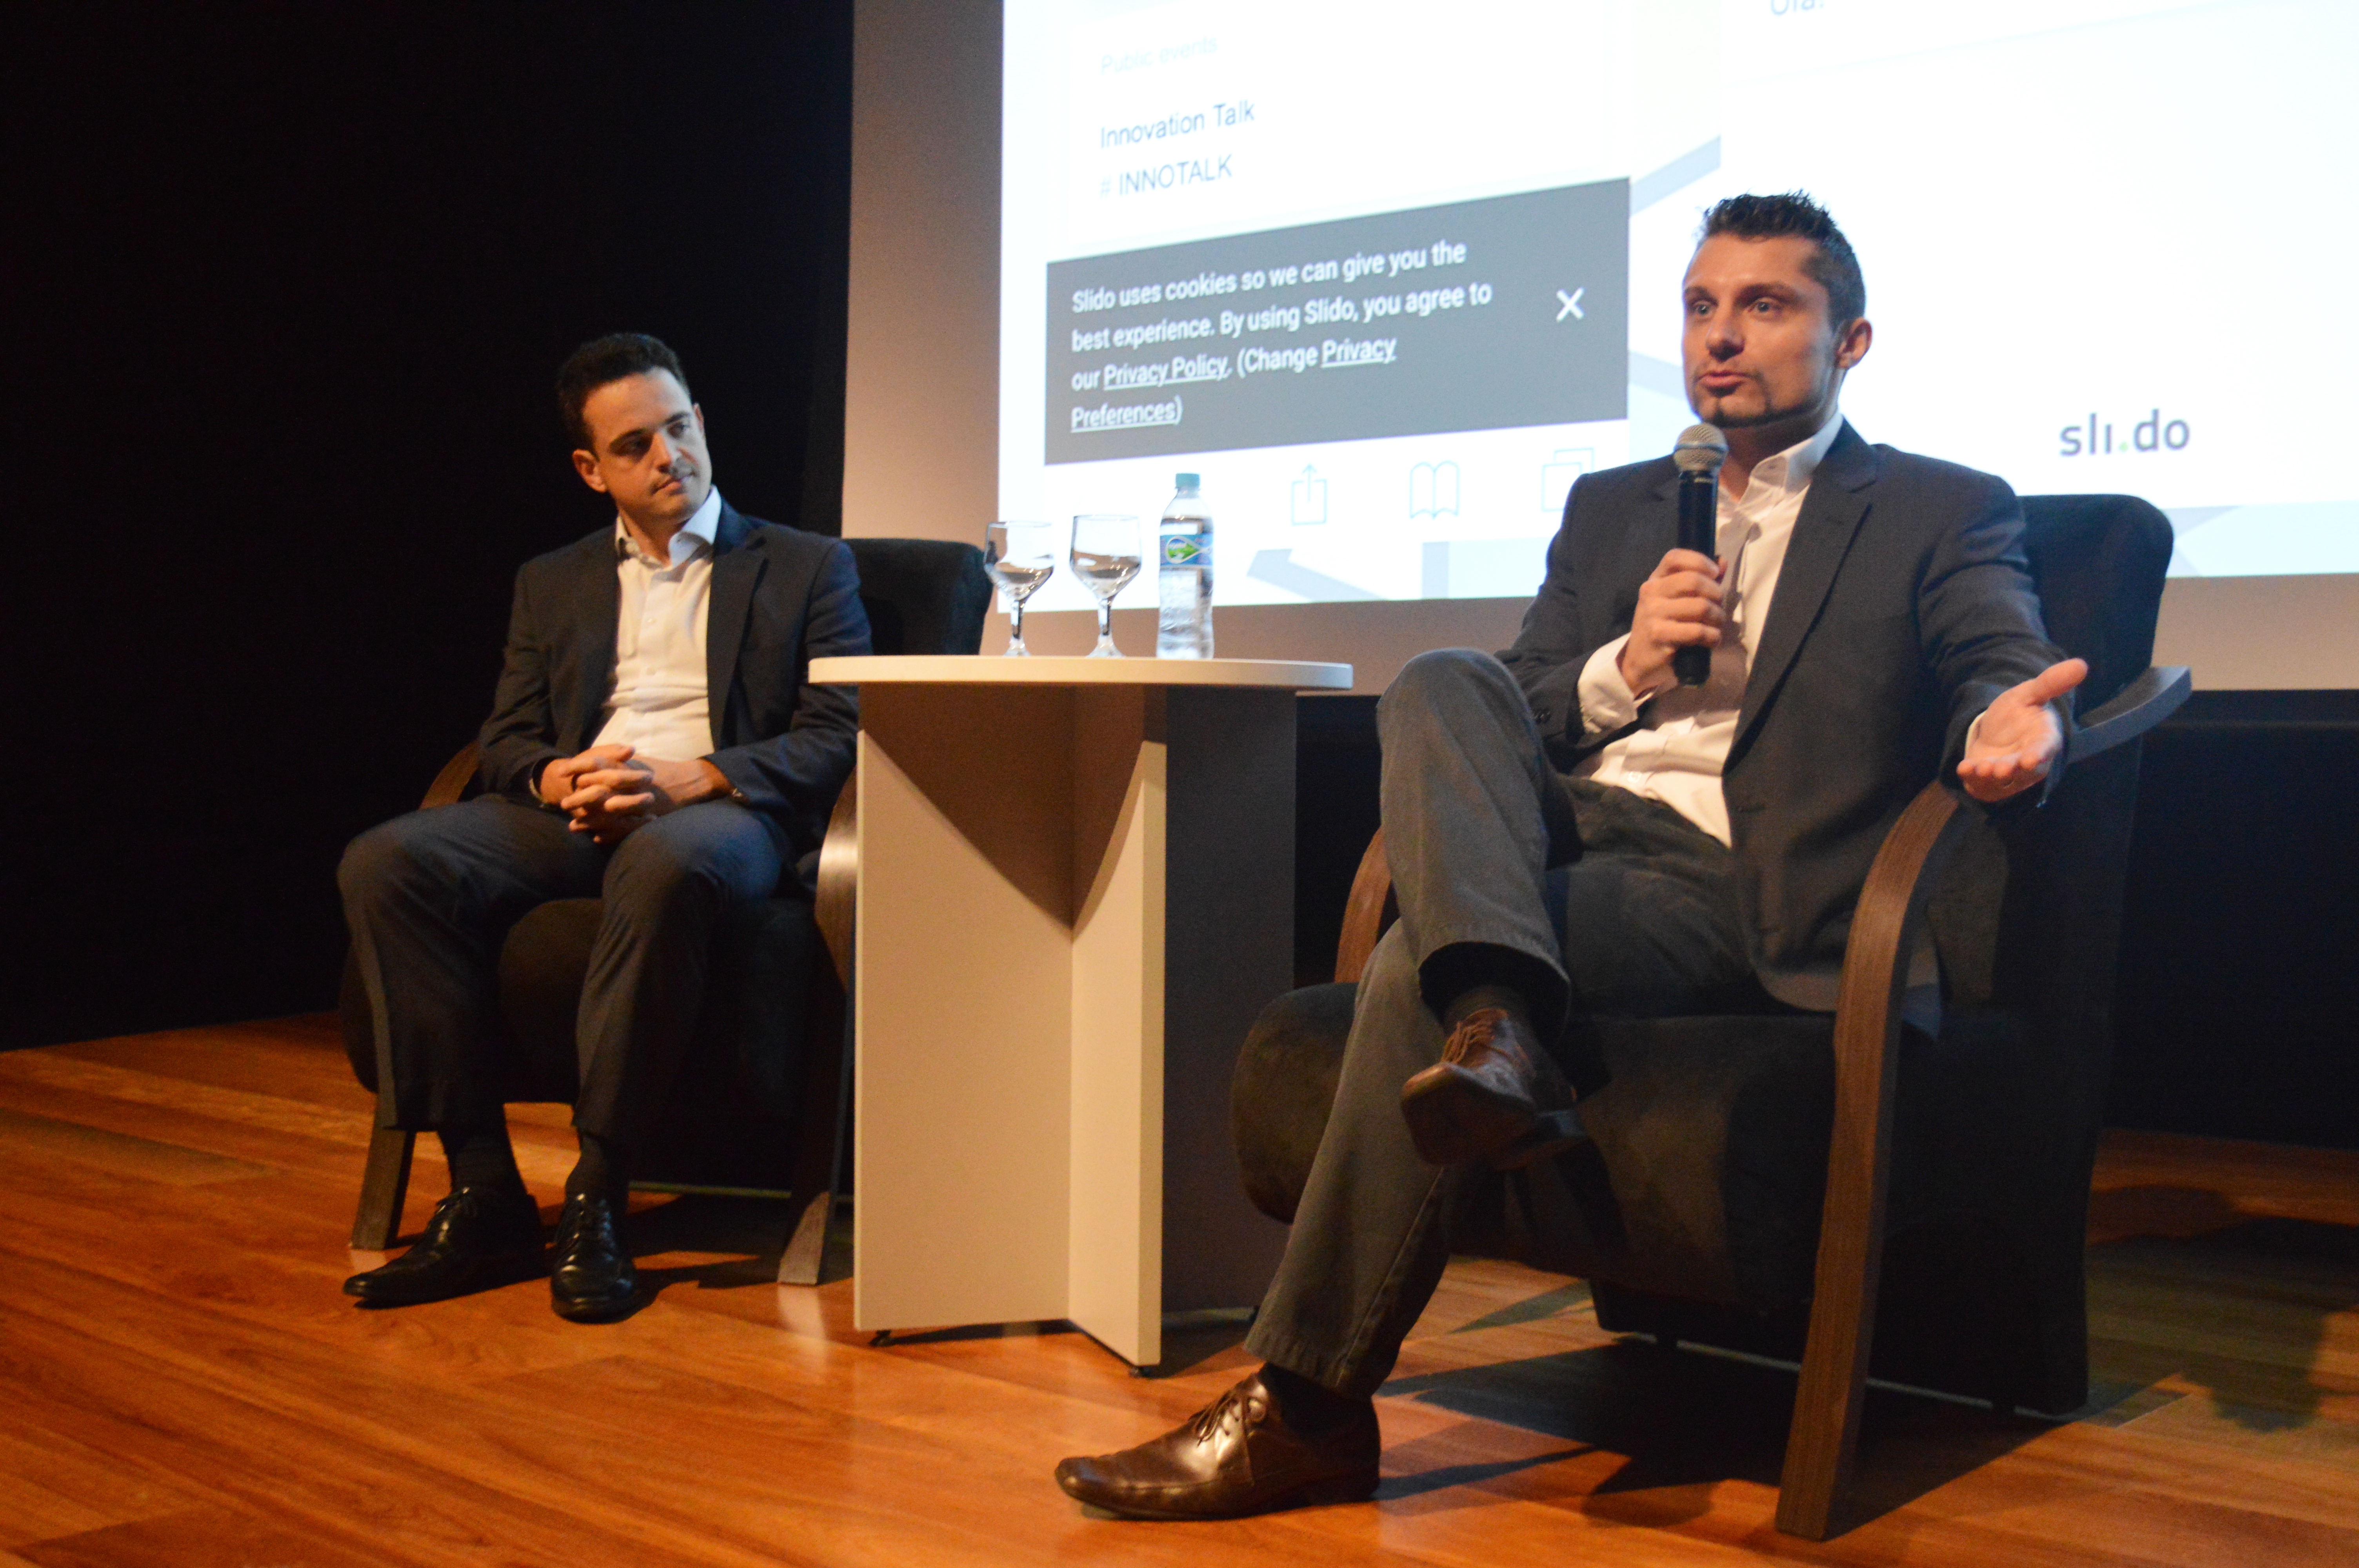 UniMAX sedia Innovation Talks que contou com a participação de Rafael Lazzaretti (CPFL) e Daniel Vieira Flores (John Deere)